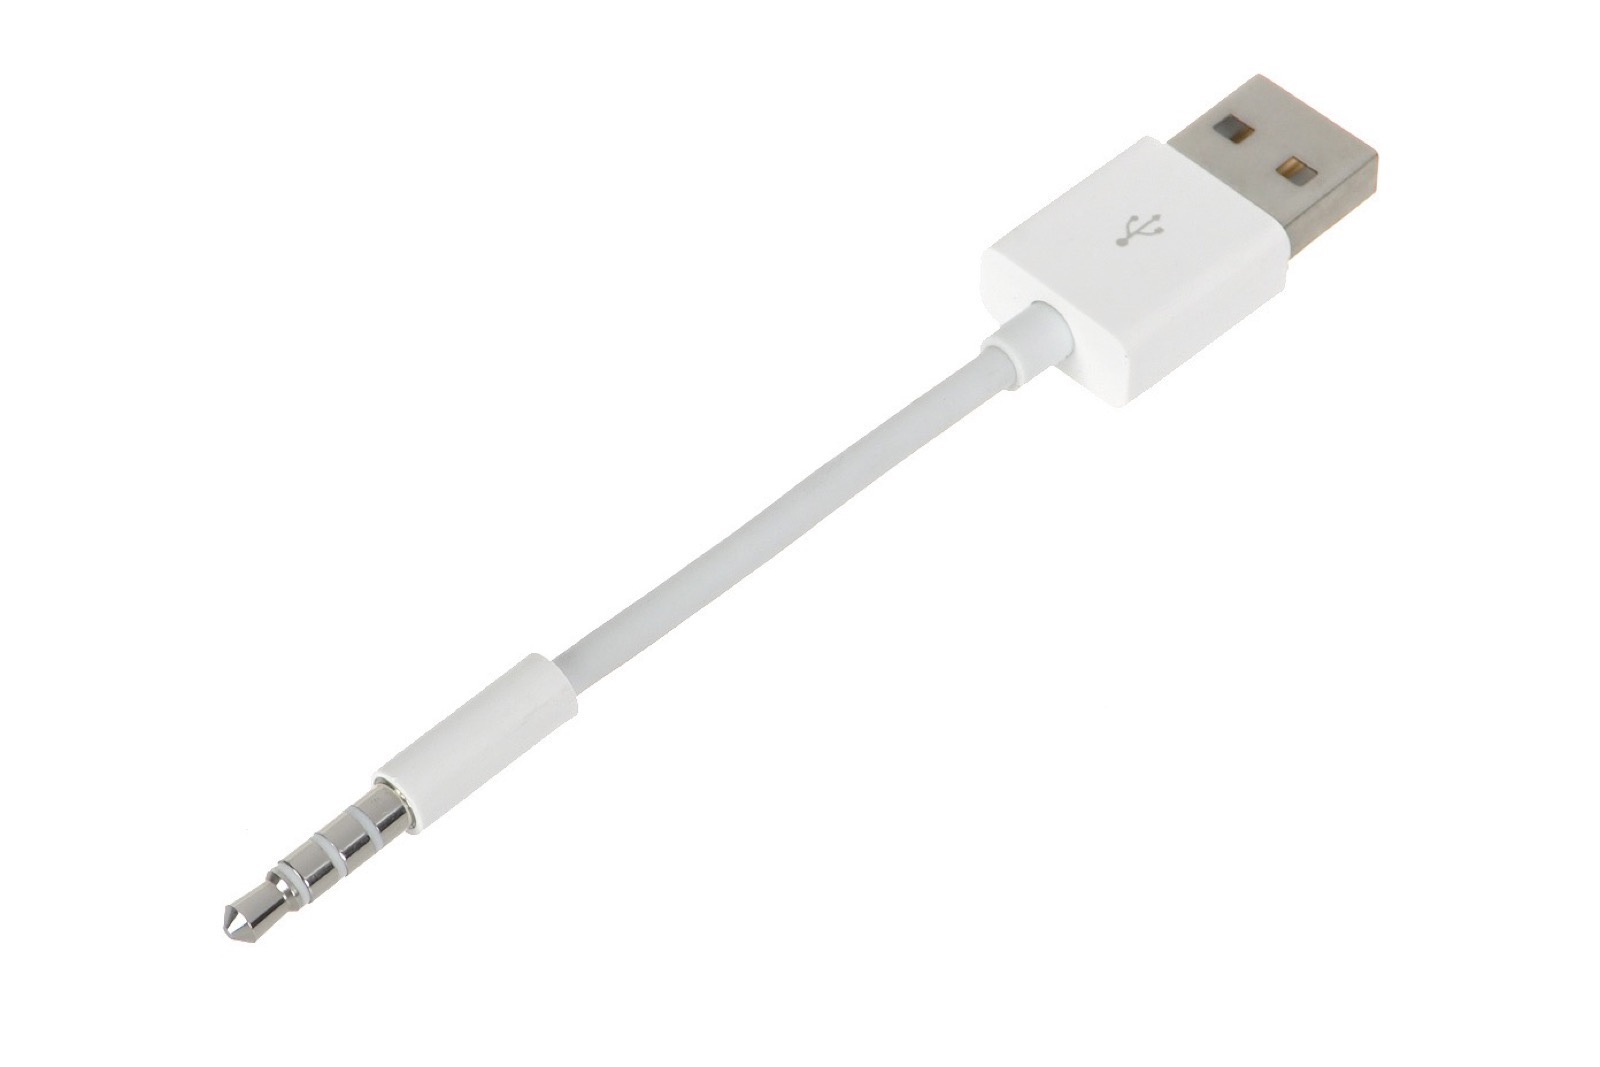 Кабель Gurdini USB кабель Gurdini iPod Shuffle, 110030, белый